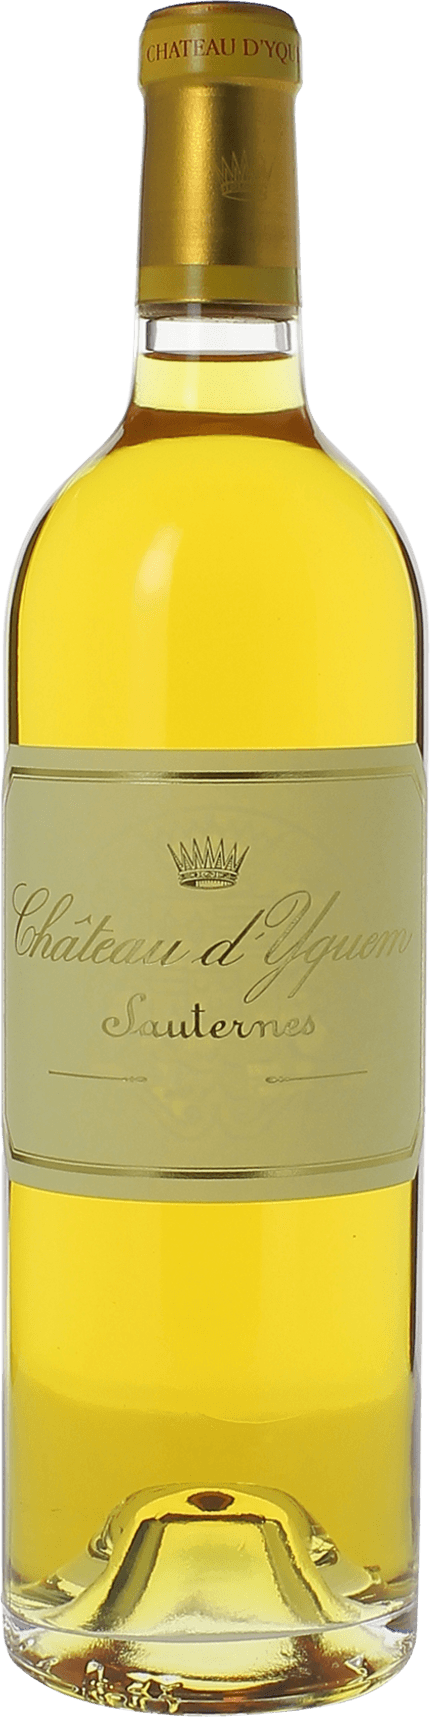 Yquem 2017 1er Grand cru class Sauternes, Bordeaux blanc